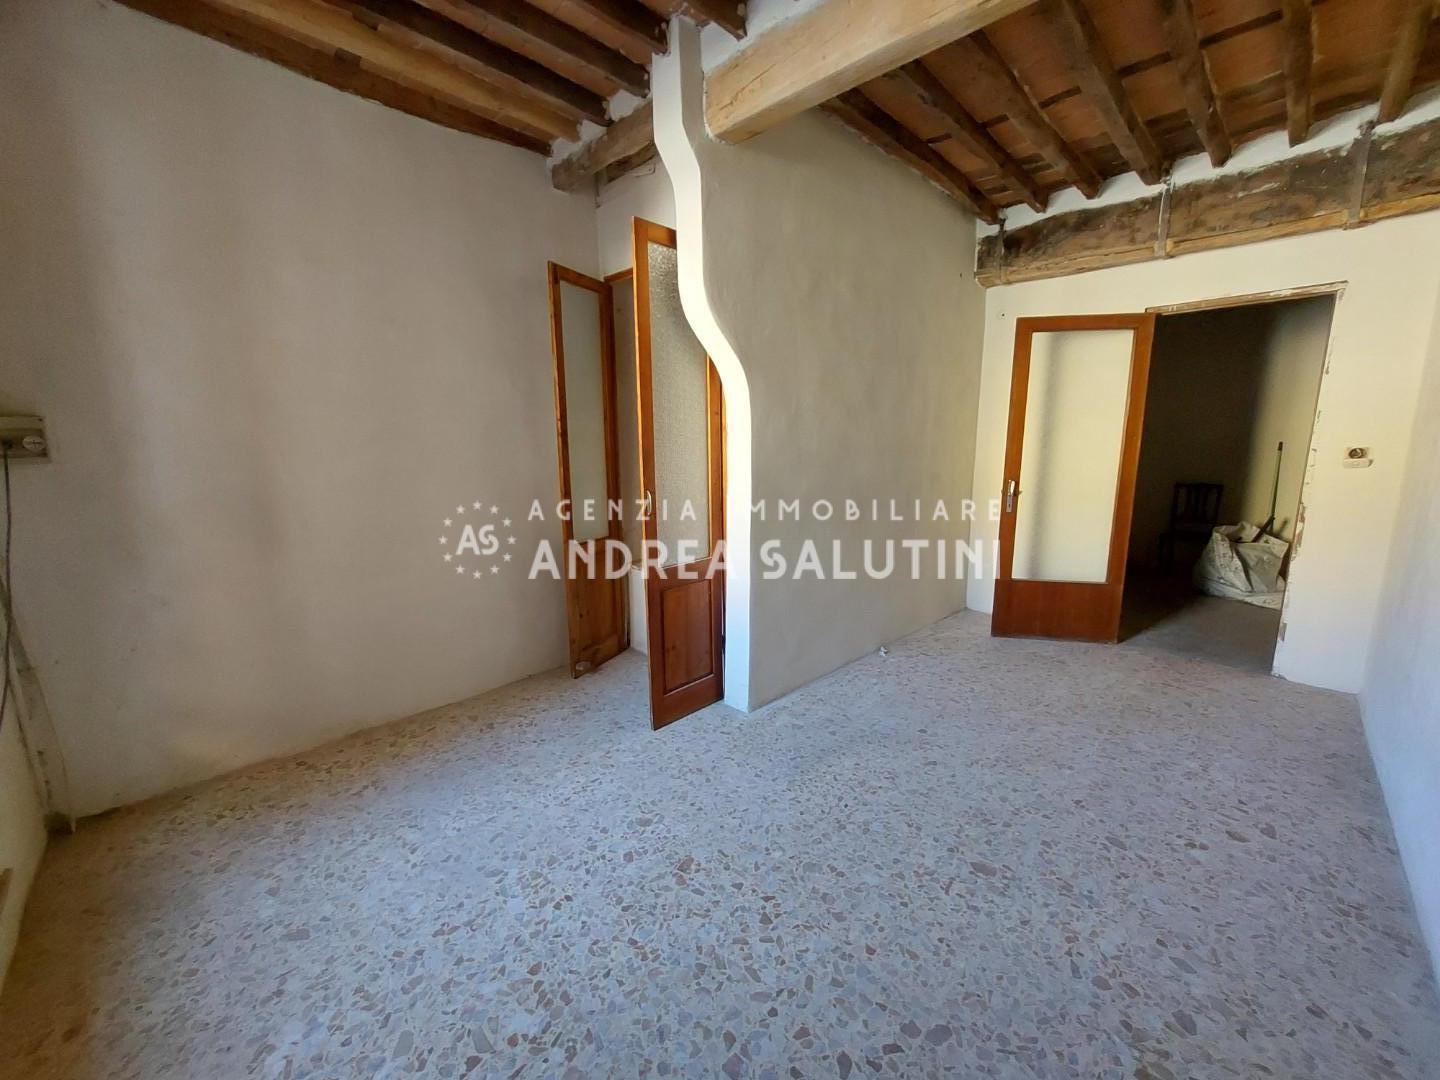 Appartamento in vendita a Buti, 4 locali, prezzo € 89.000 | PortaleAgenzieImmobiliari.it